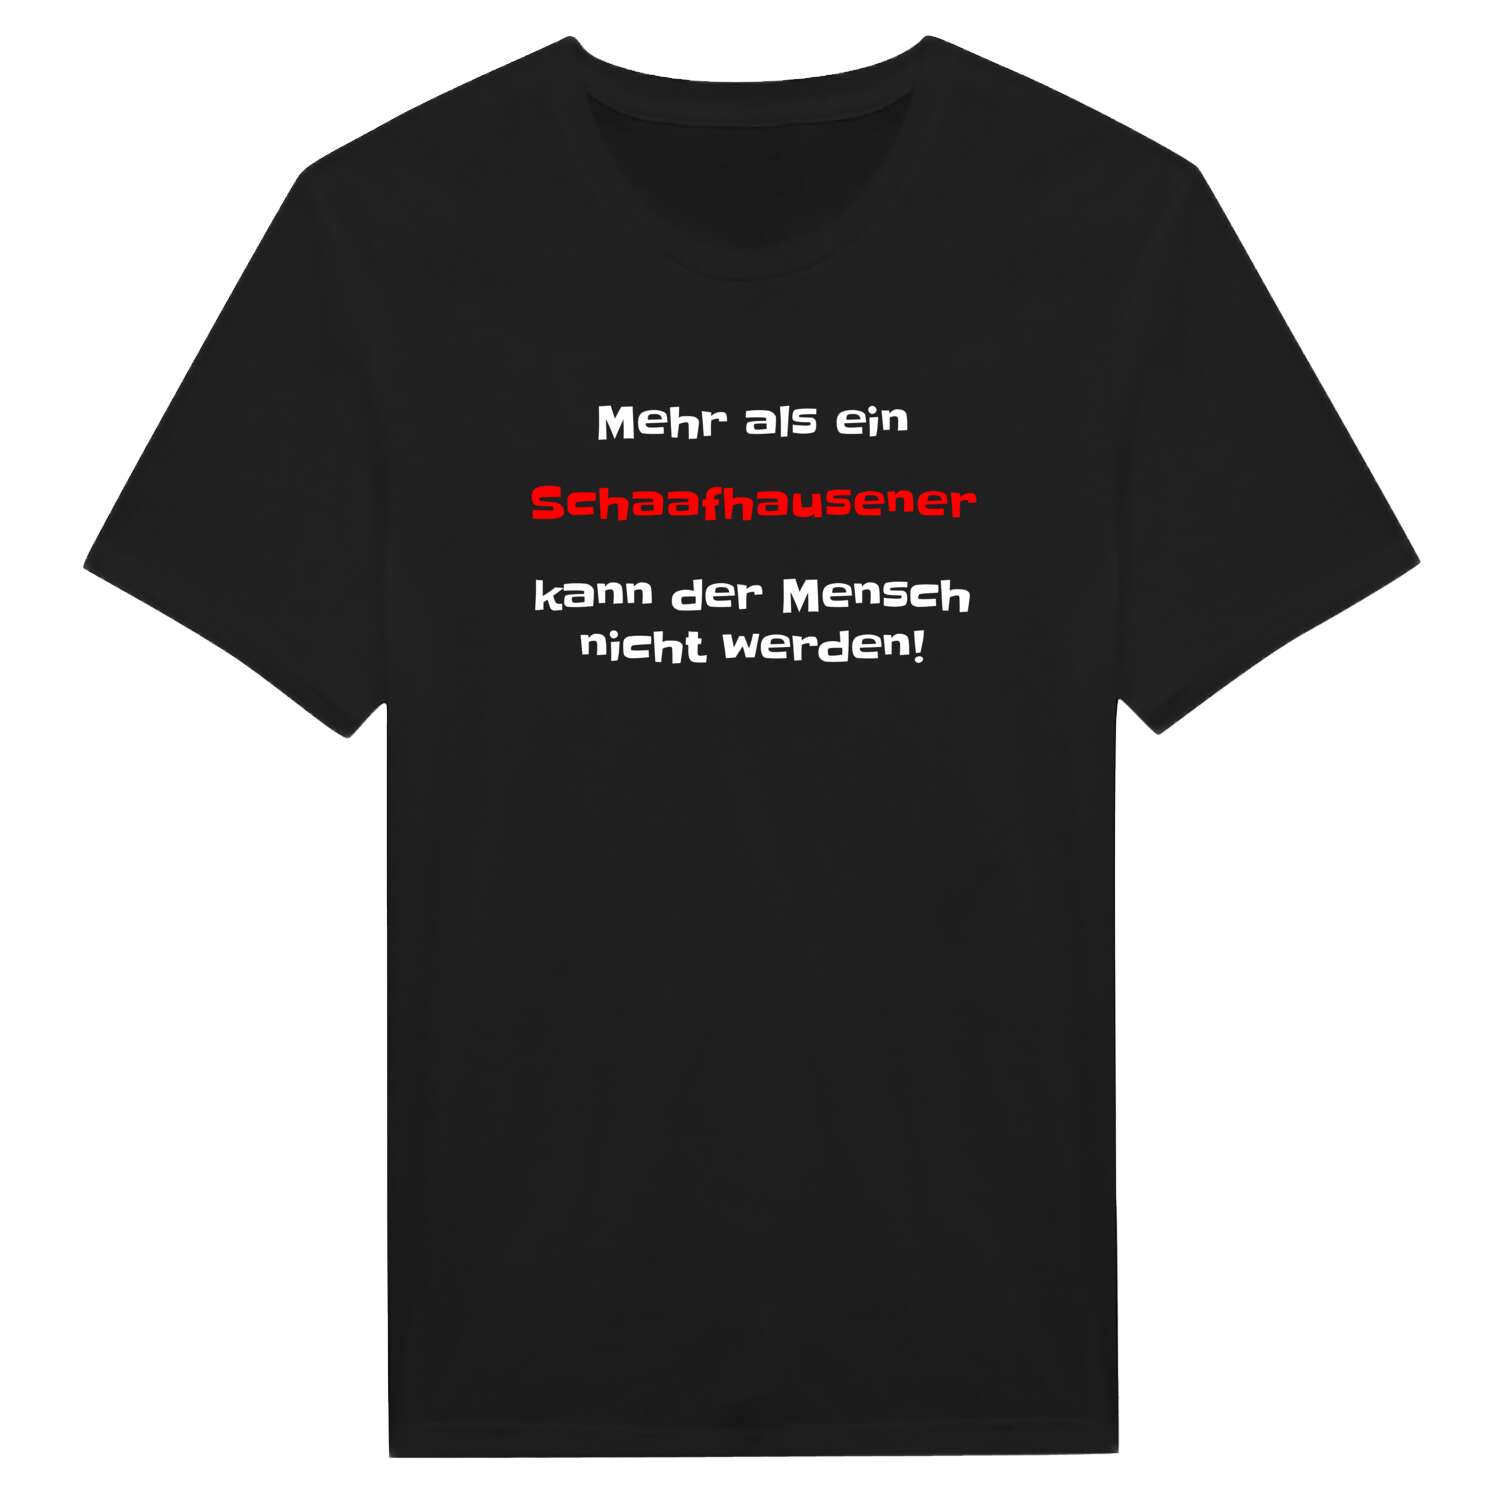 Schaafhausen T-Shirt »Mehr als ein«